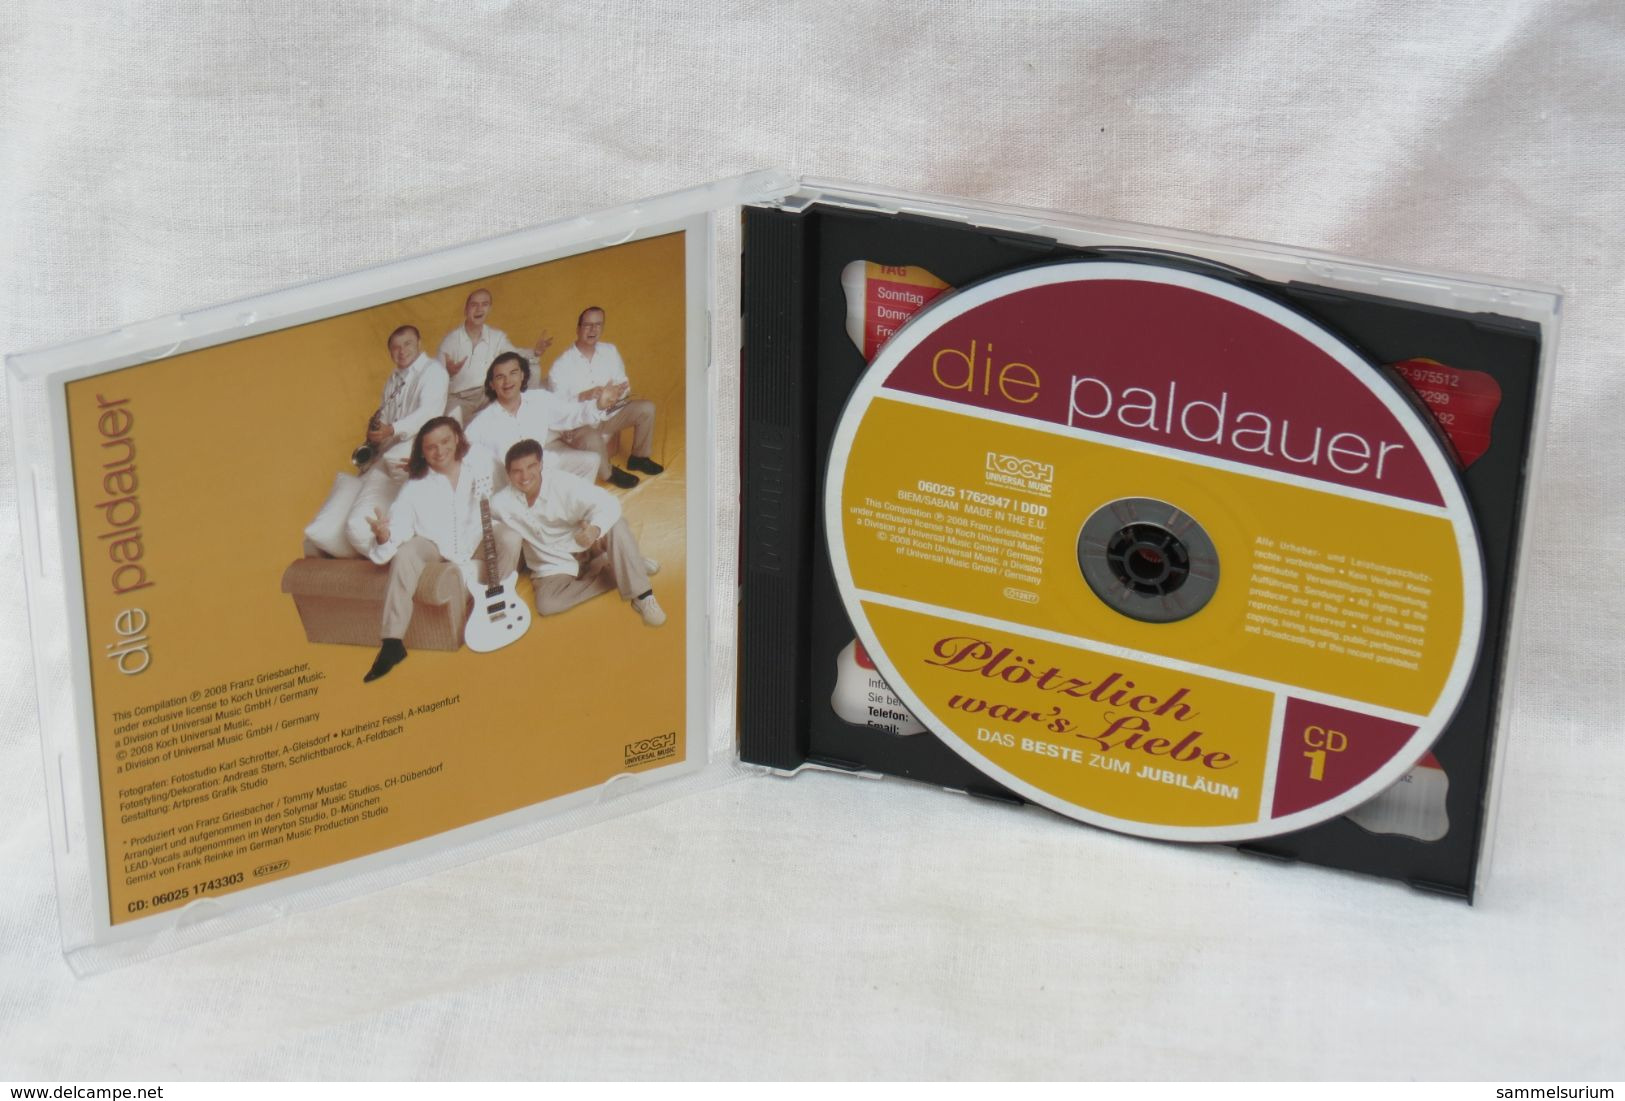 2 CDs "Die Paldauer" Plötzlich War's Liebe, Das Beste Zum Jubiläum - Sonstige - Deutsche Musik